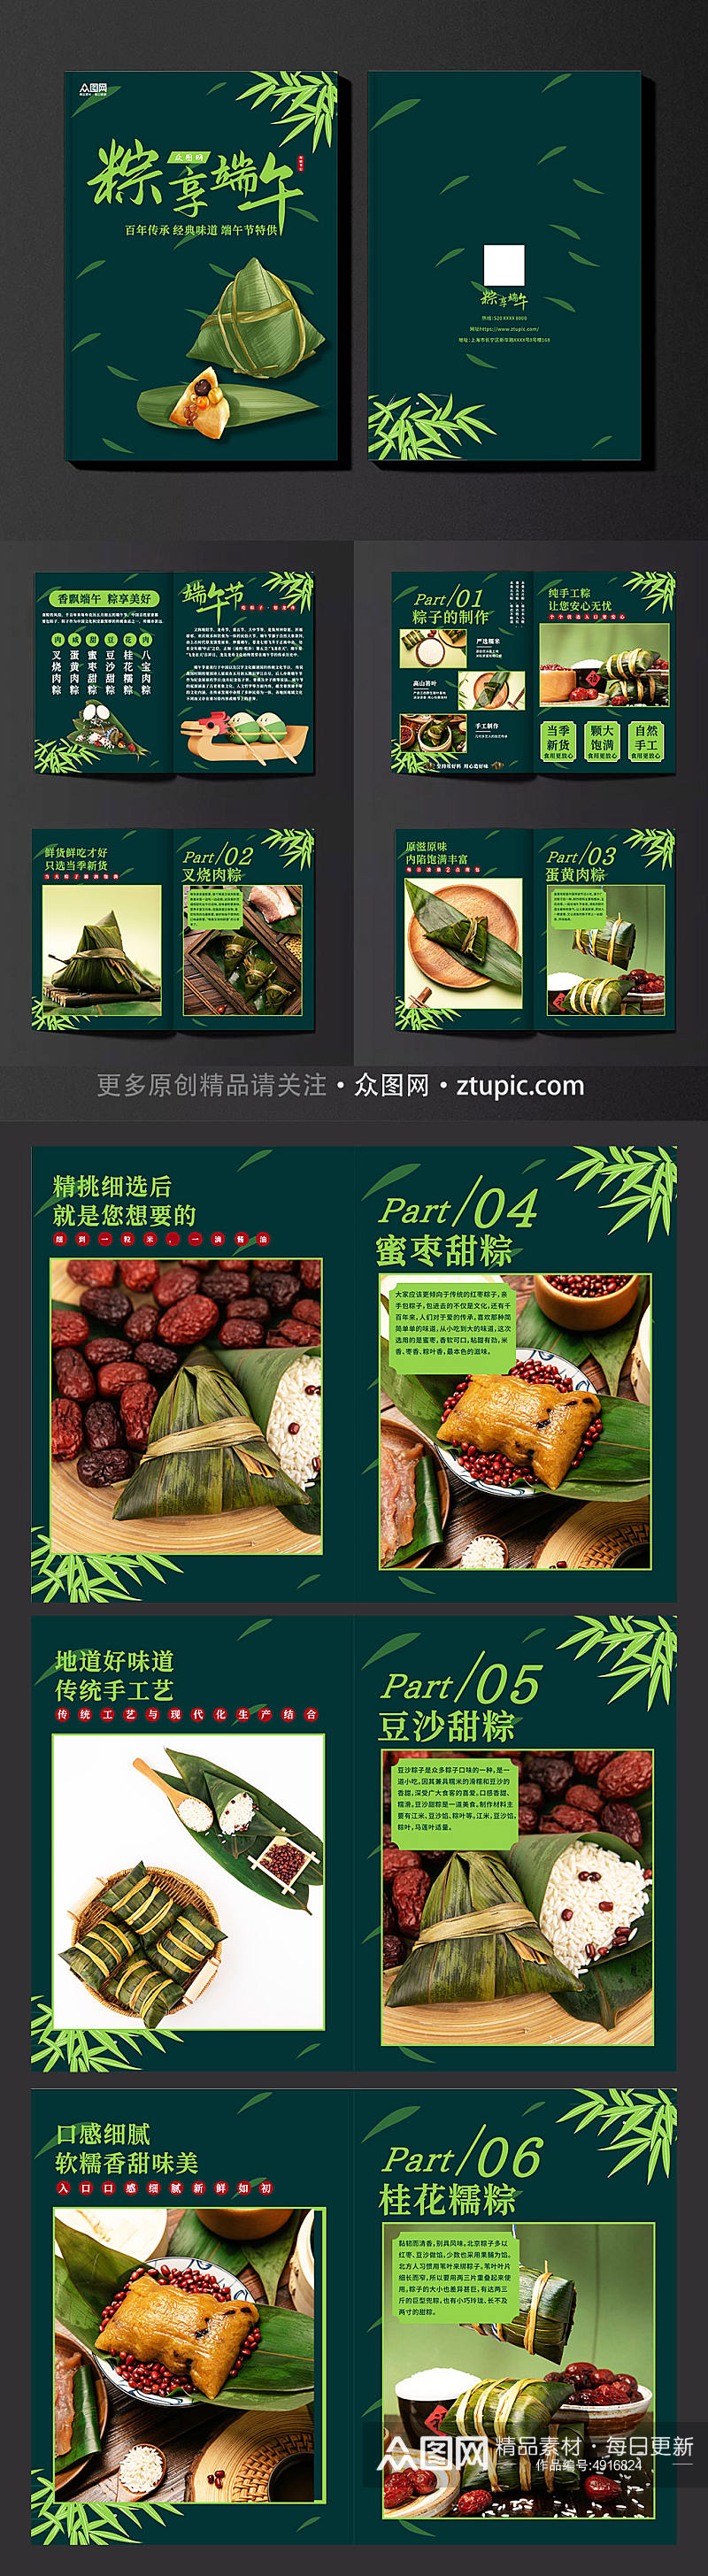 简约创意端午节粽子美食产品画册素材